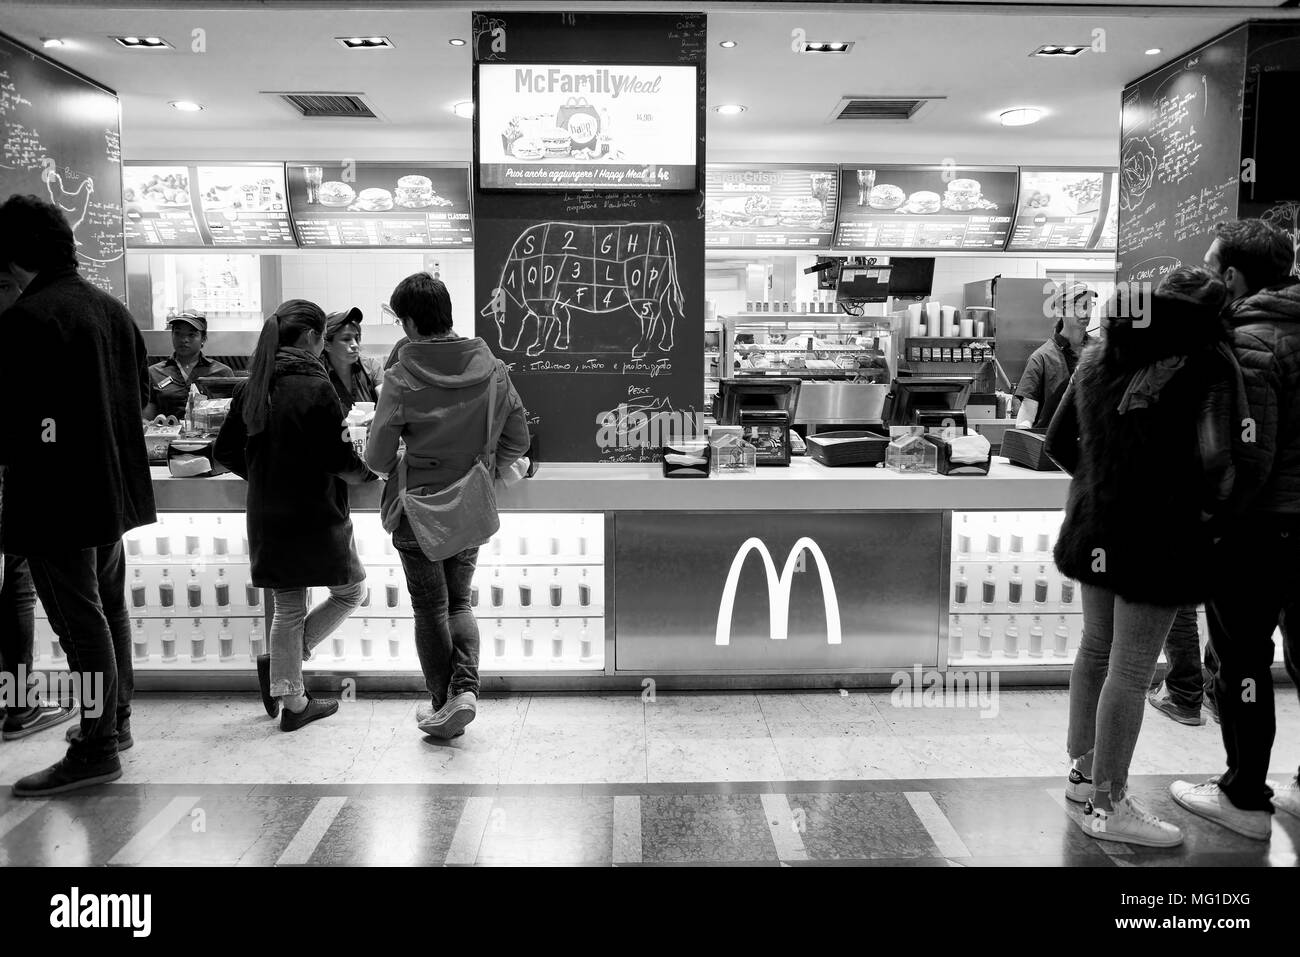 Mailand, Italien - ca. November 2017: inside McDonald's Restaurant. McDonald's ist eine US-amerikanische Hamburger und Fast Food Restaurant kette. Stockfoto